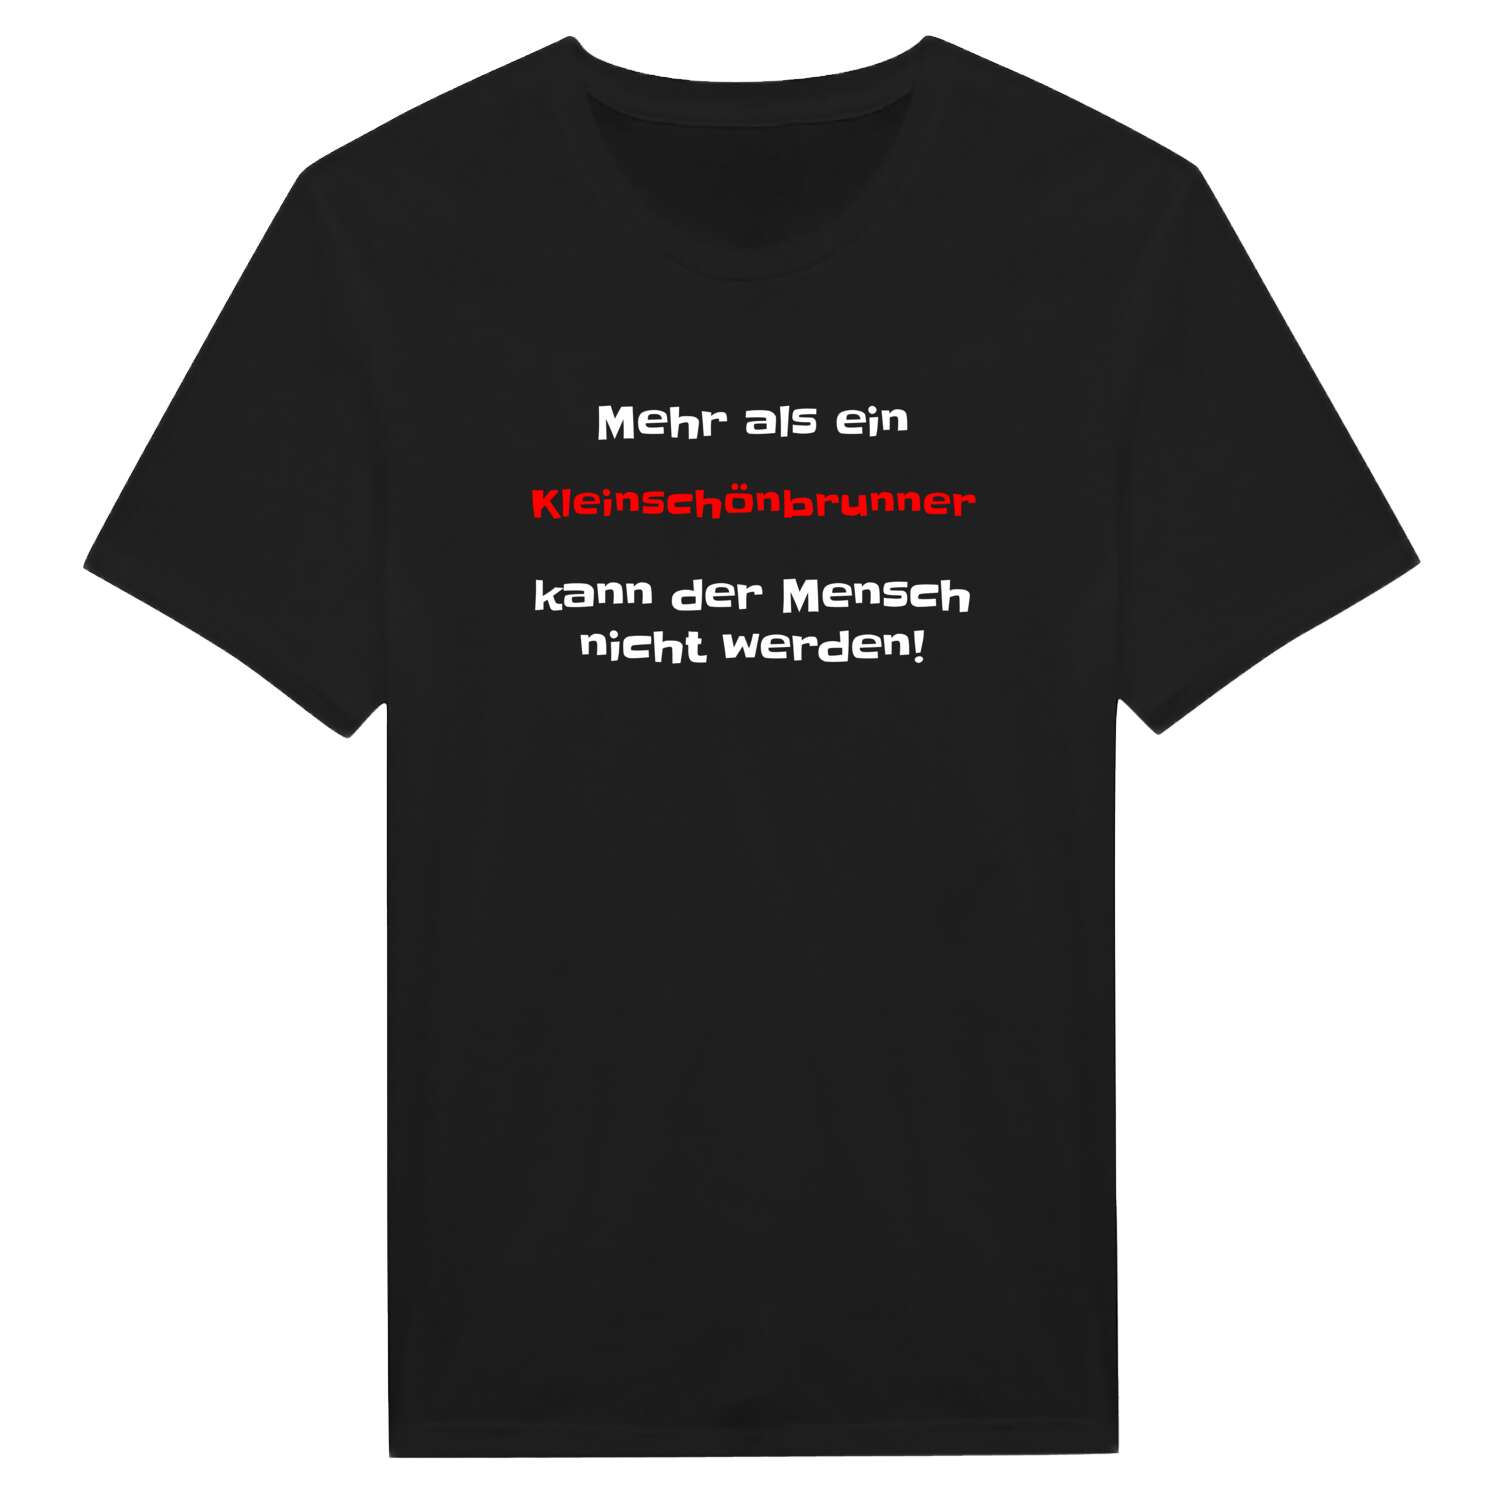 Kleinschönbrunn T-Shirt »Mehr als ein«